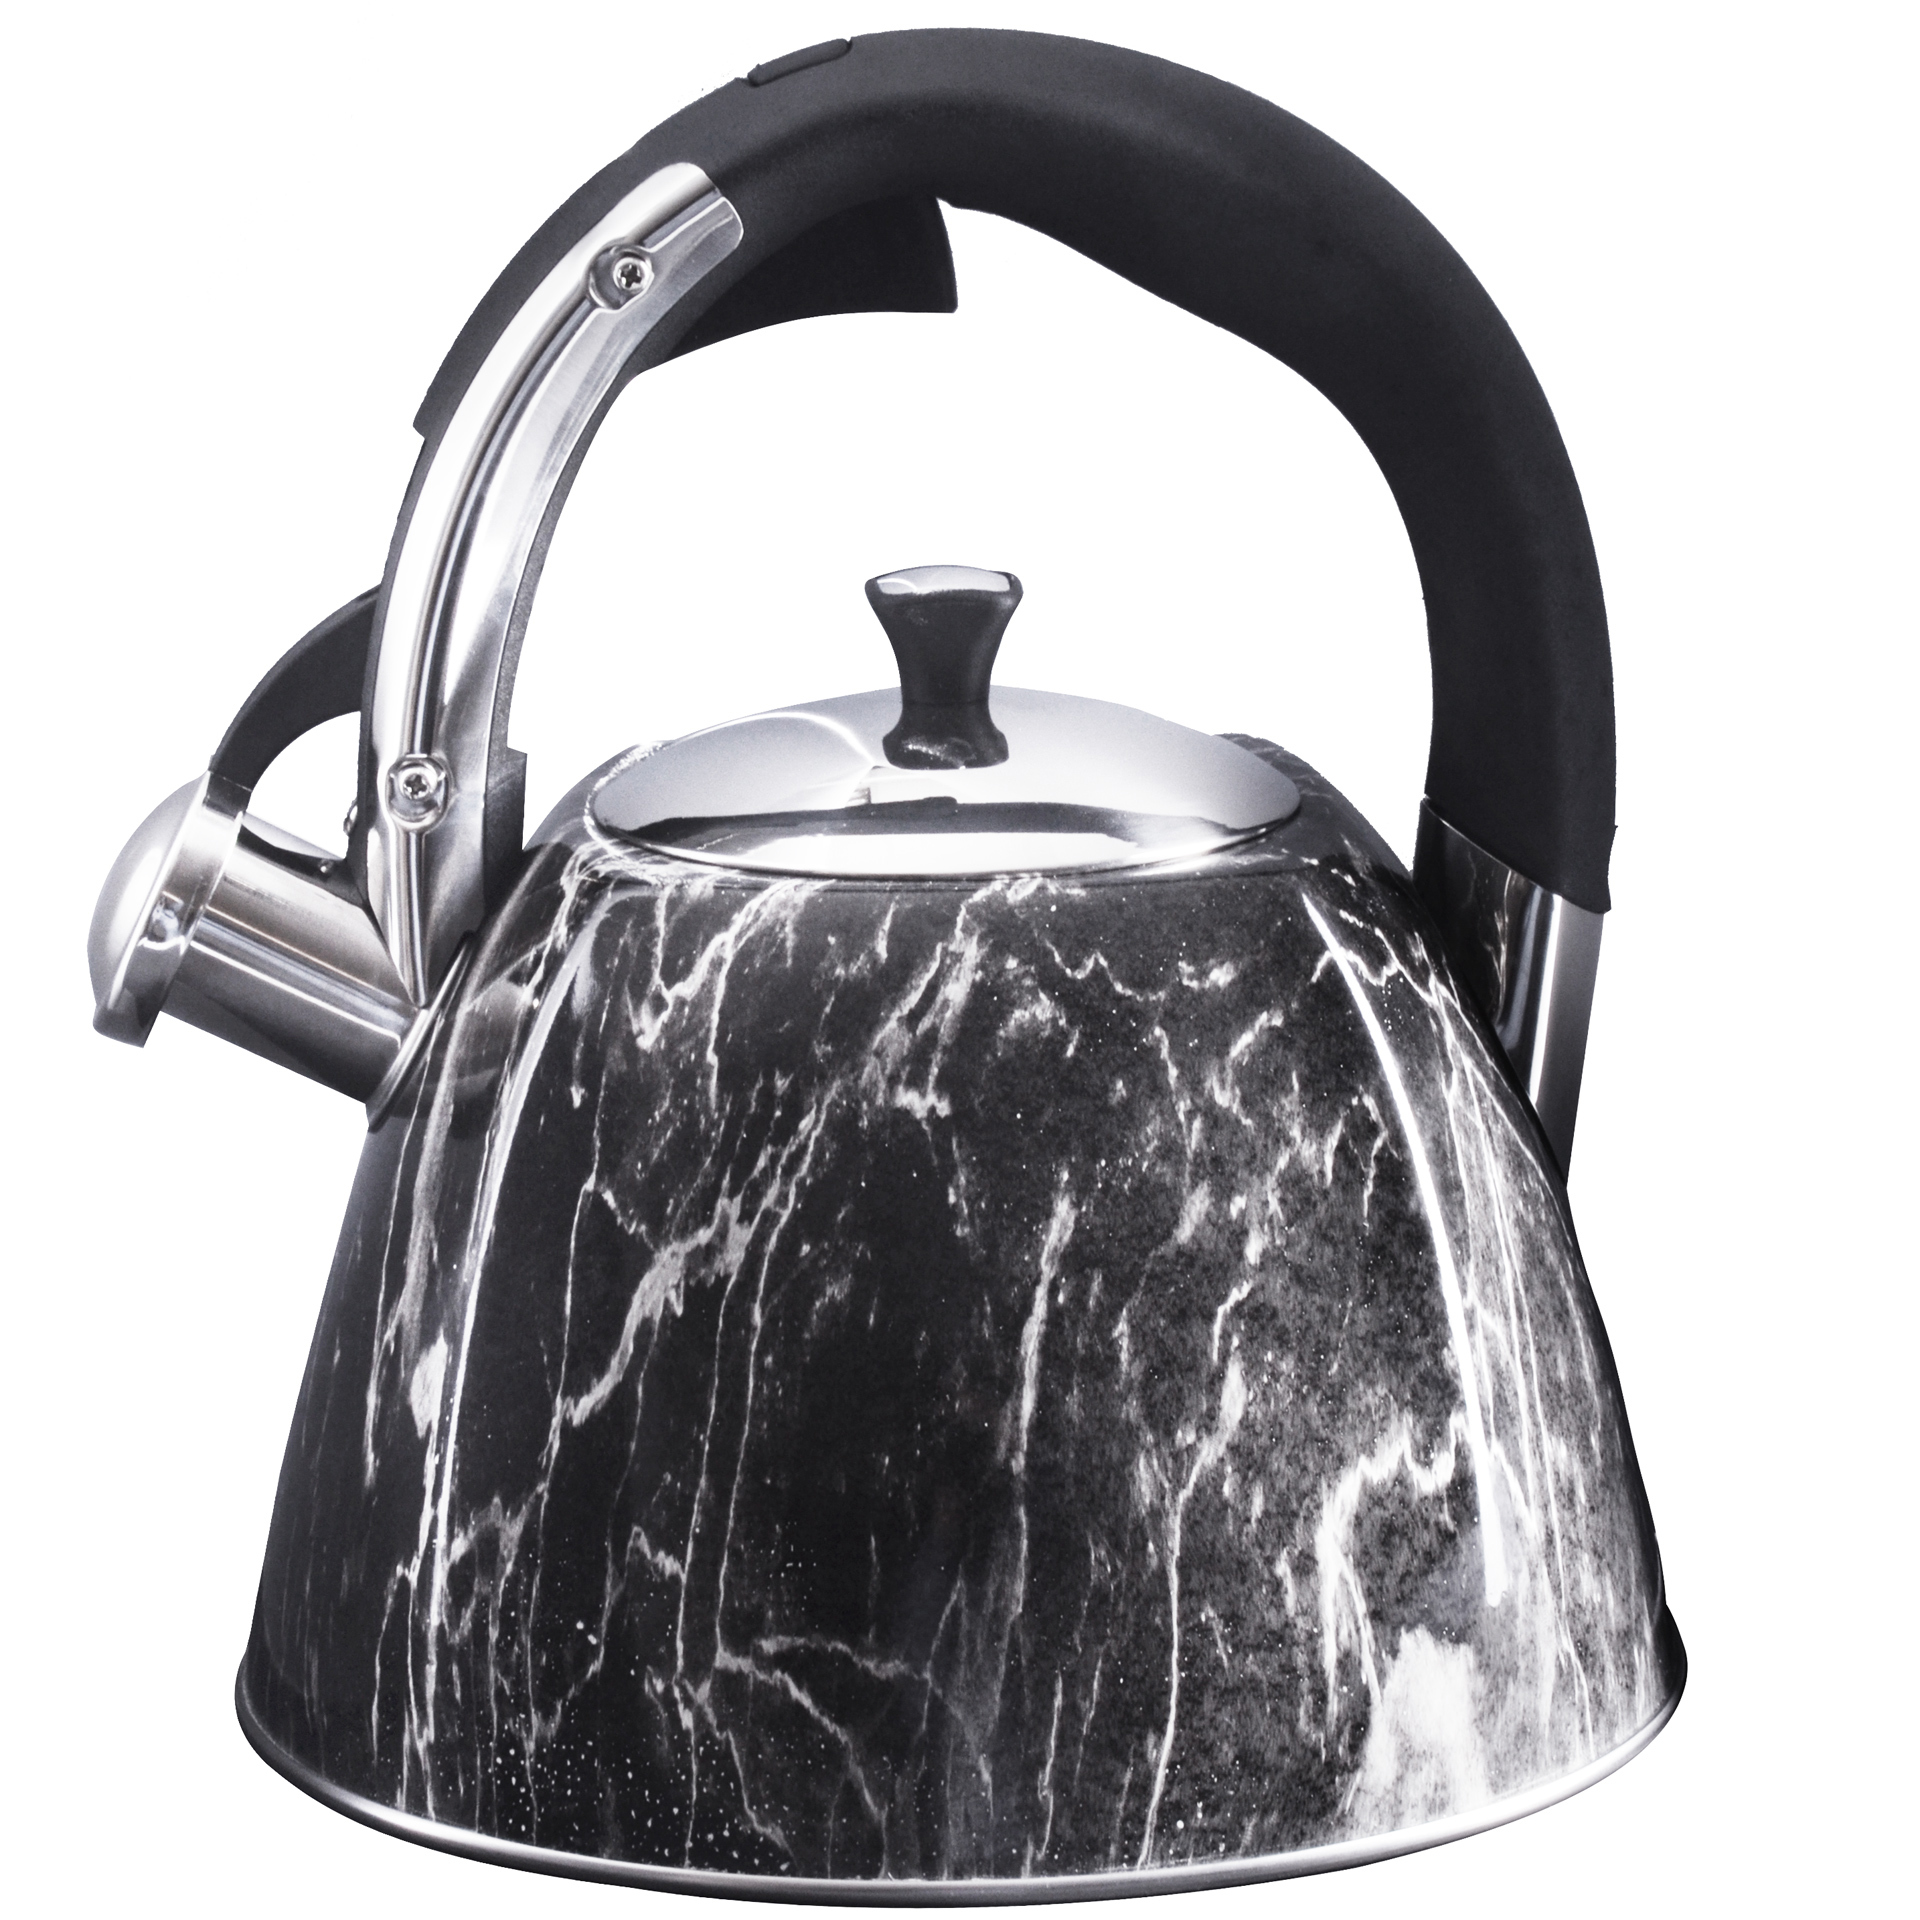 90169099 Чайник для плиты со свистком 3 л нержавеющая сталь черный STLM-0122124 MAYER&BOCH